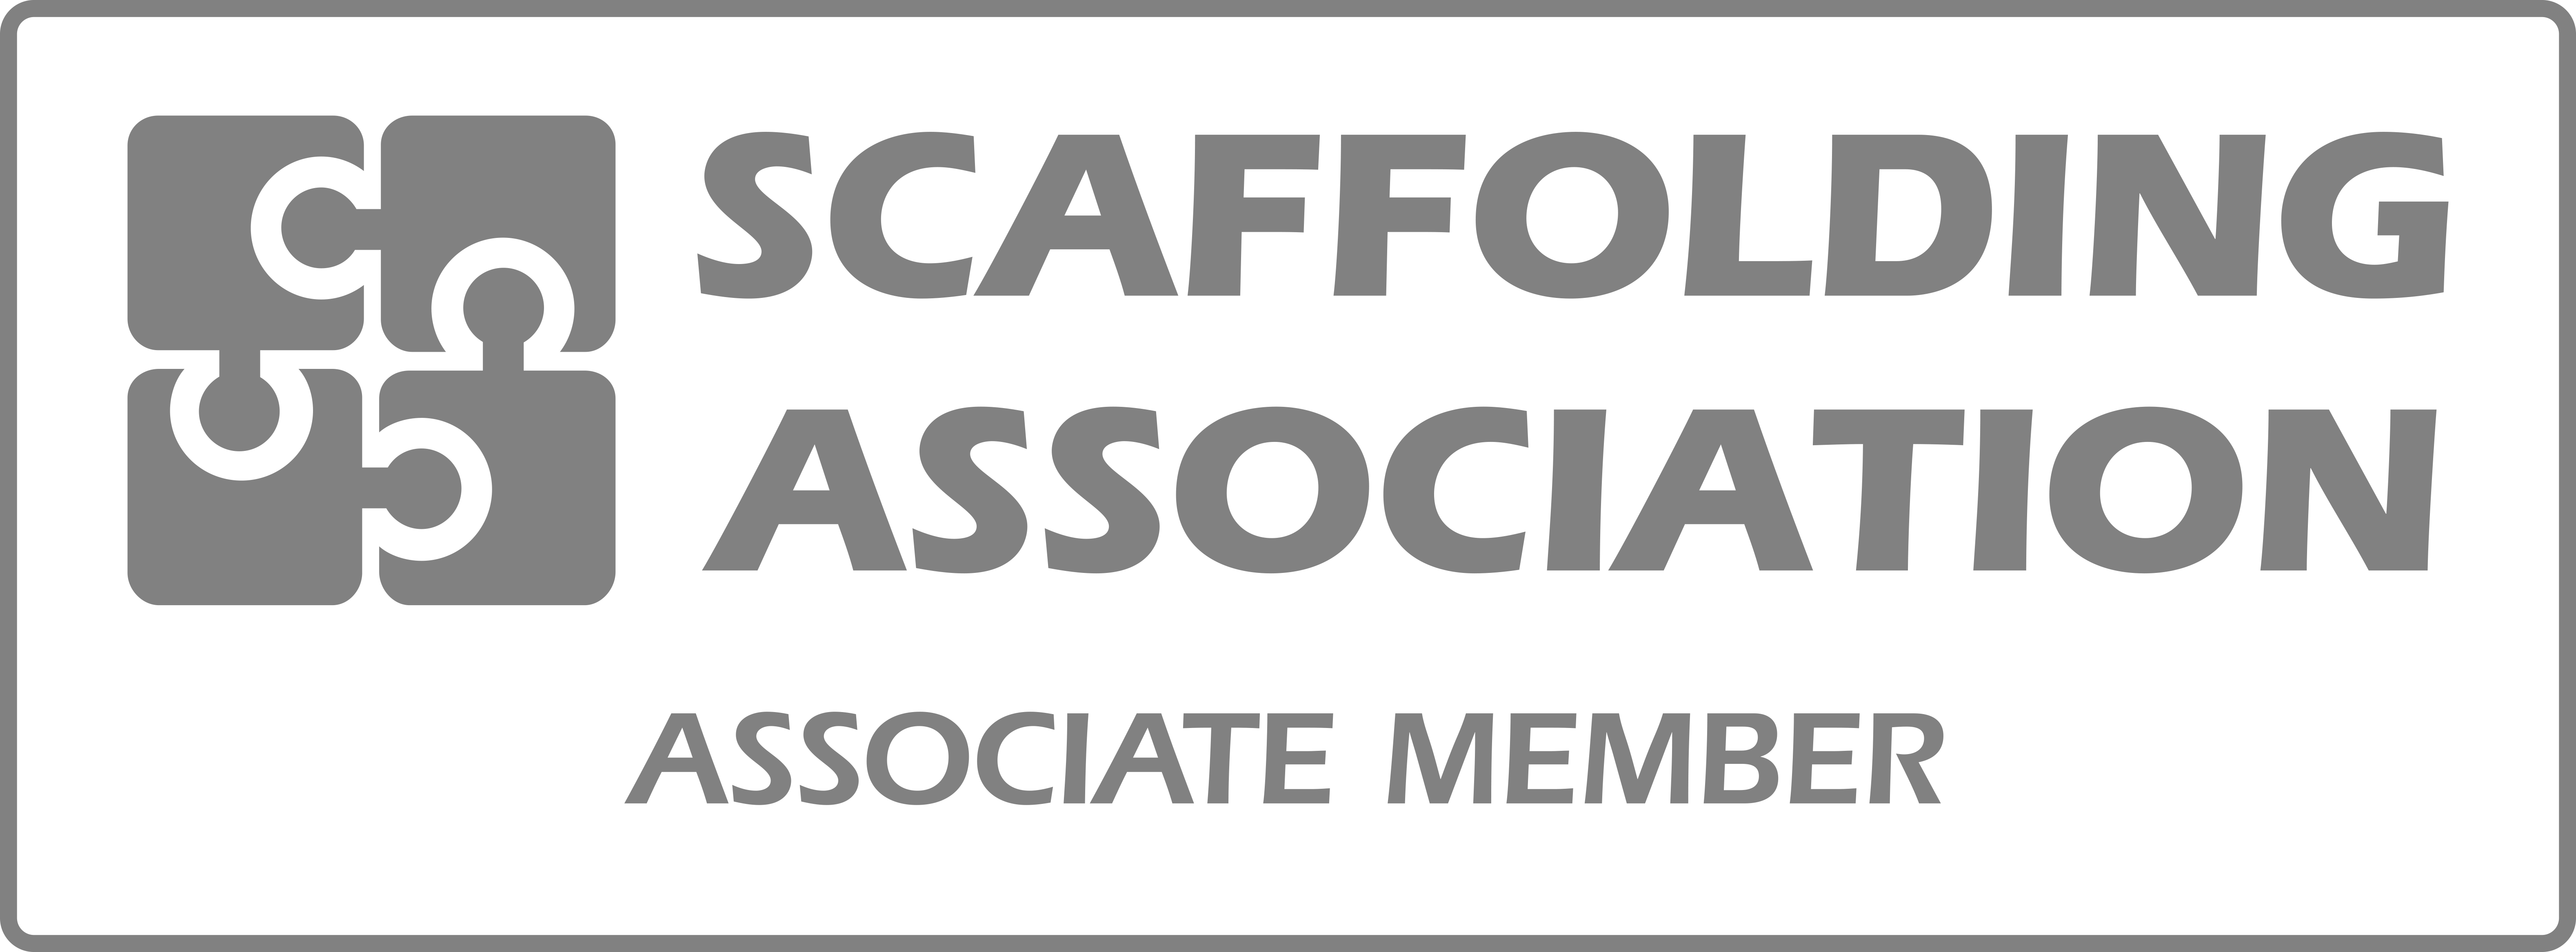 Scaffold Association Associate Member logo